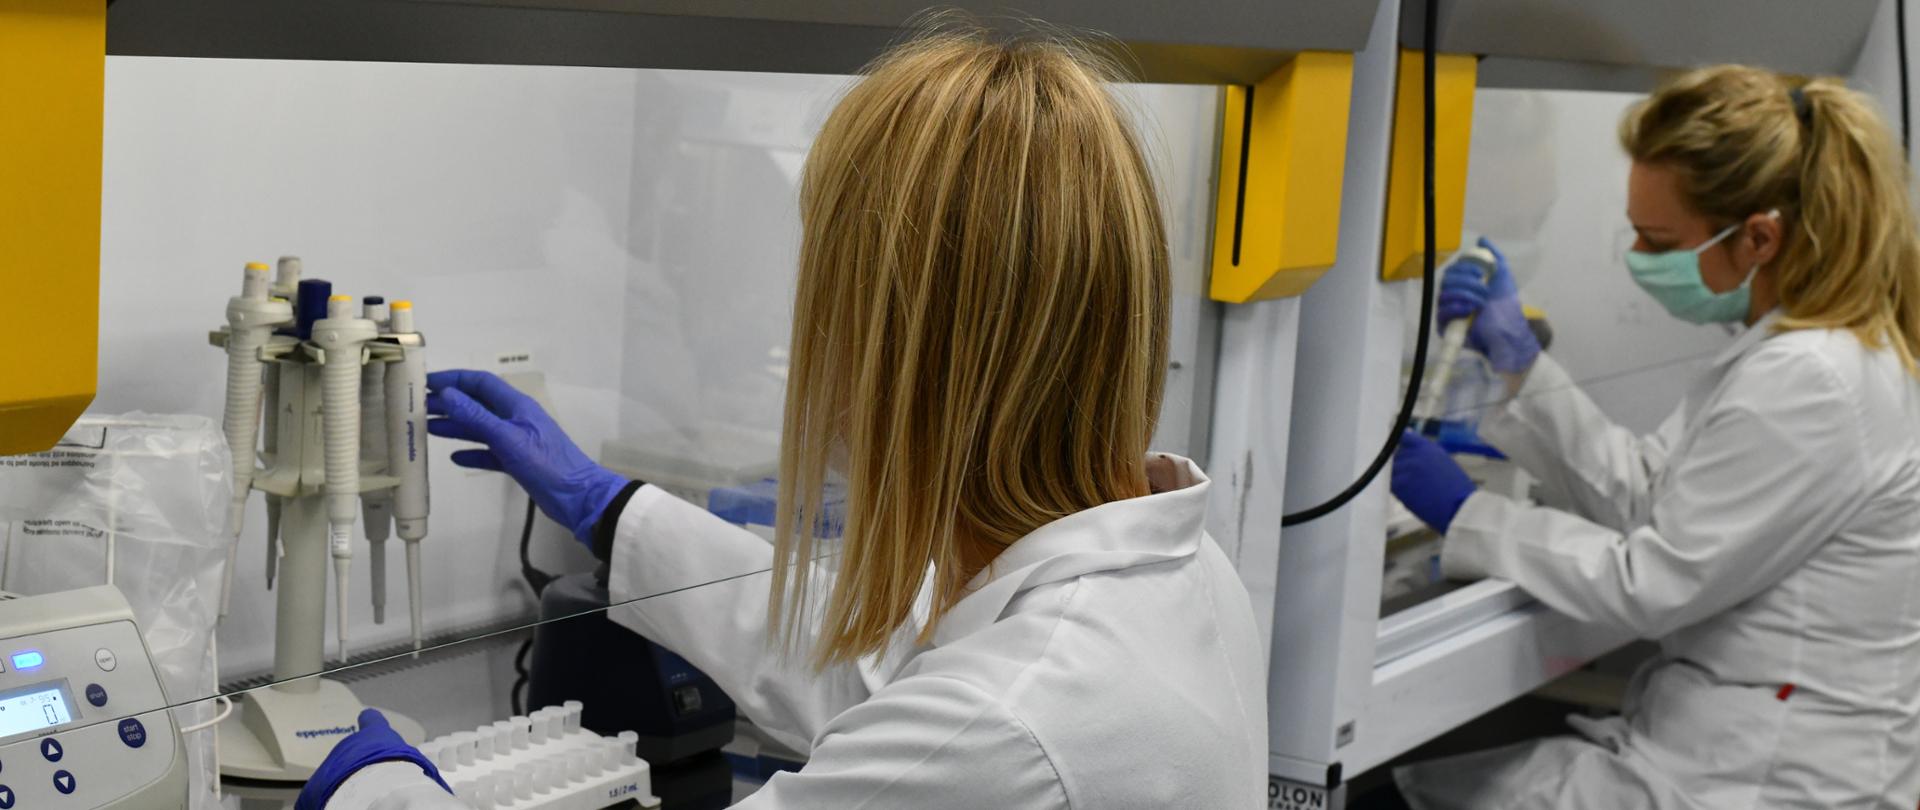 Zdjęcie przedstawia diagnostę laboratoryjnego podczas pracy. Na zdjęciu widoczne są 2 pracownice laboratorium podczas wykonywania pracy. Ubrane w białe fartuchy. 